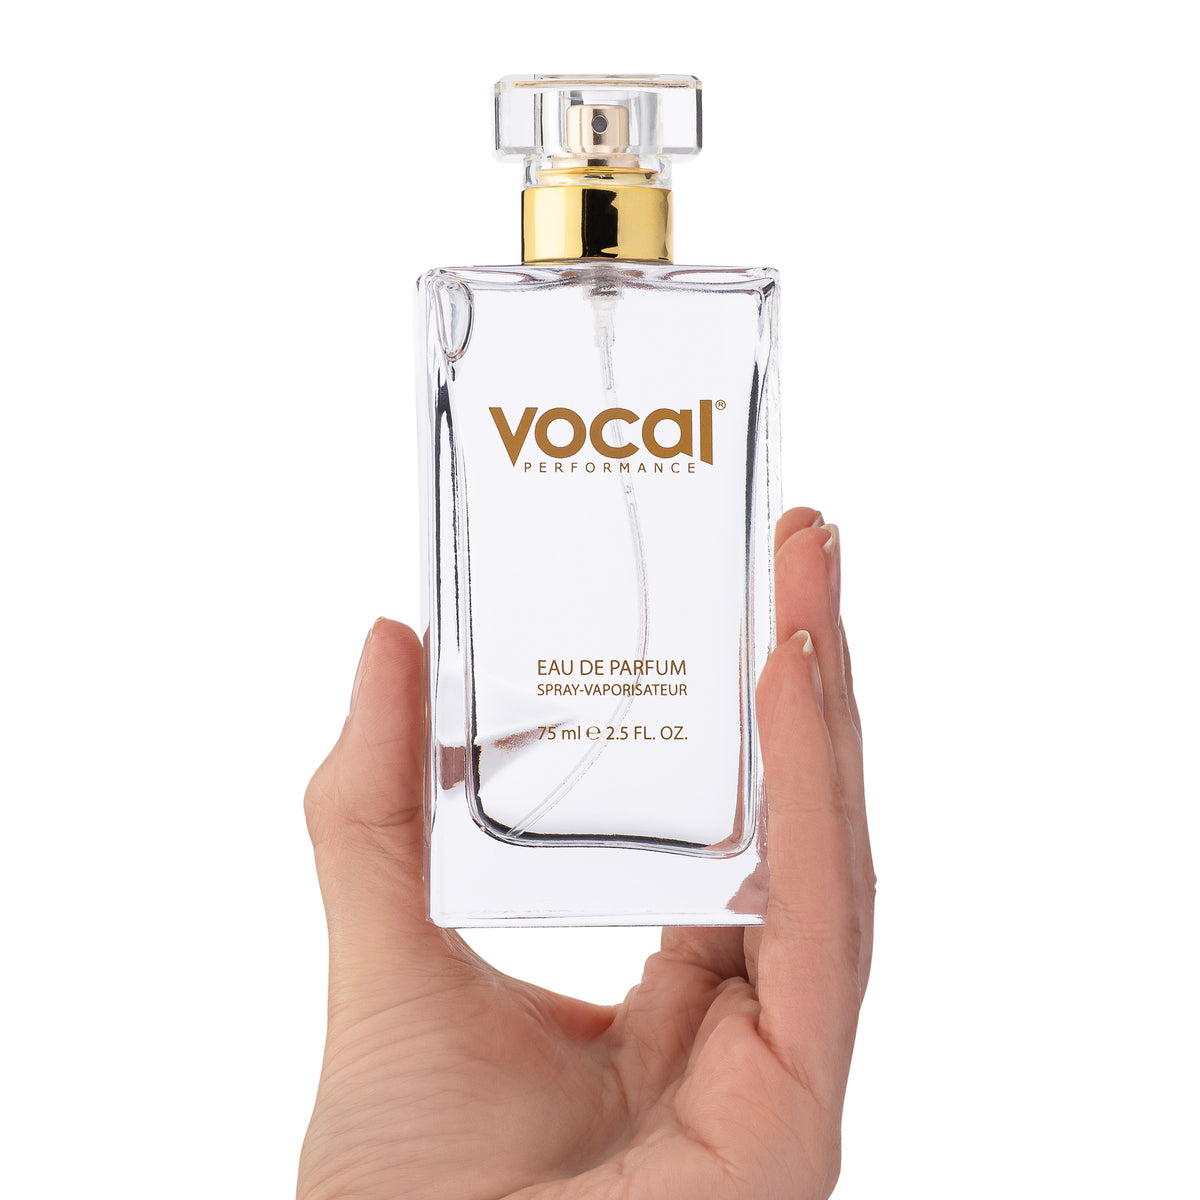 M005 Vocal Performance Eau De Parfum For Men Inspired by Chanel Allure